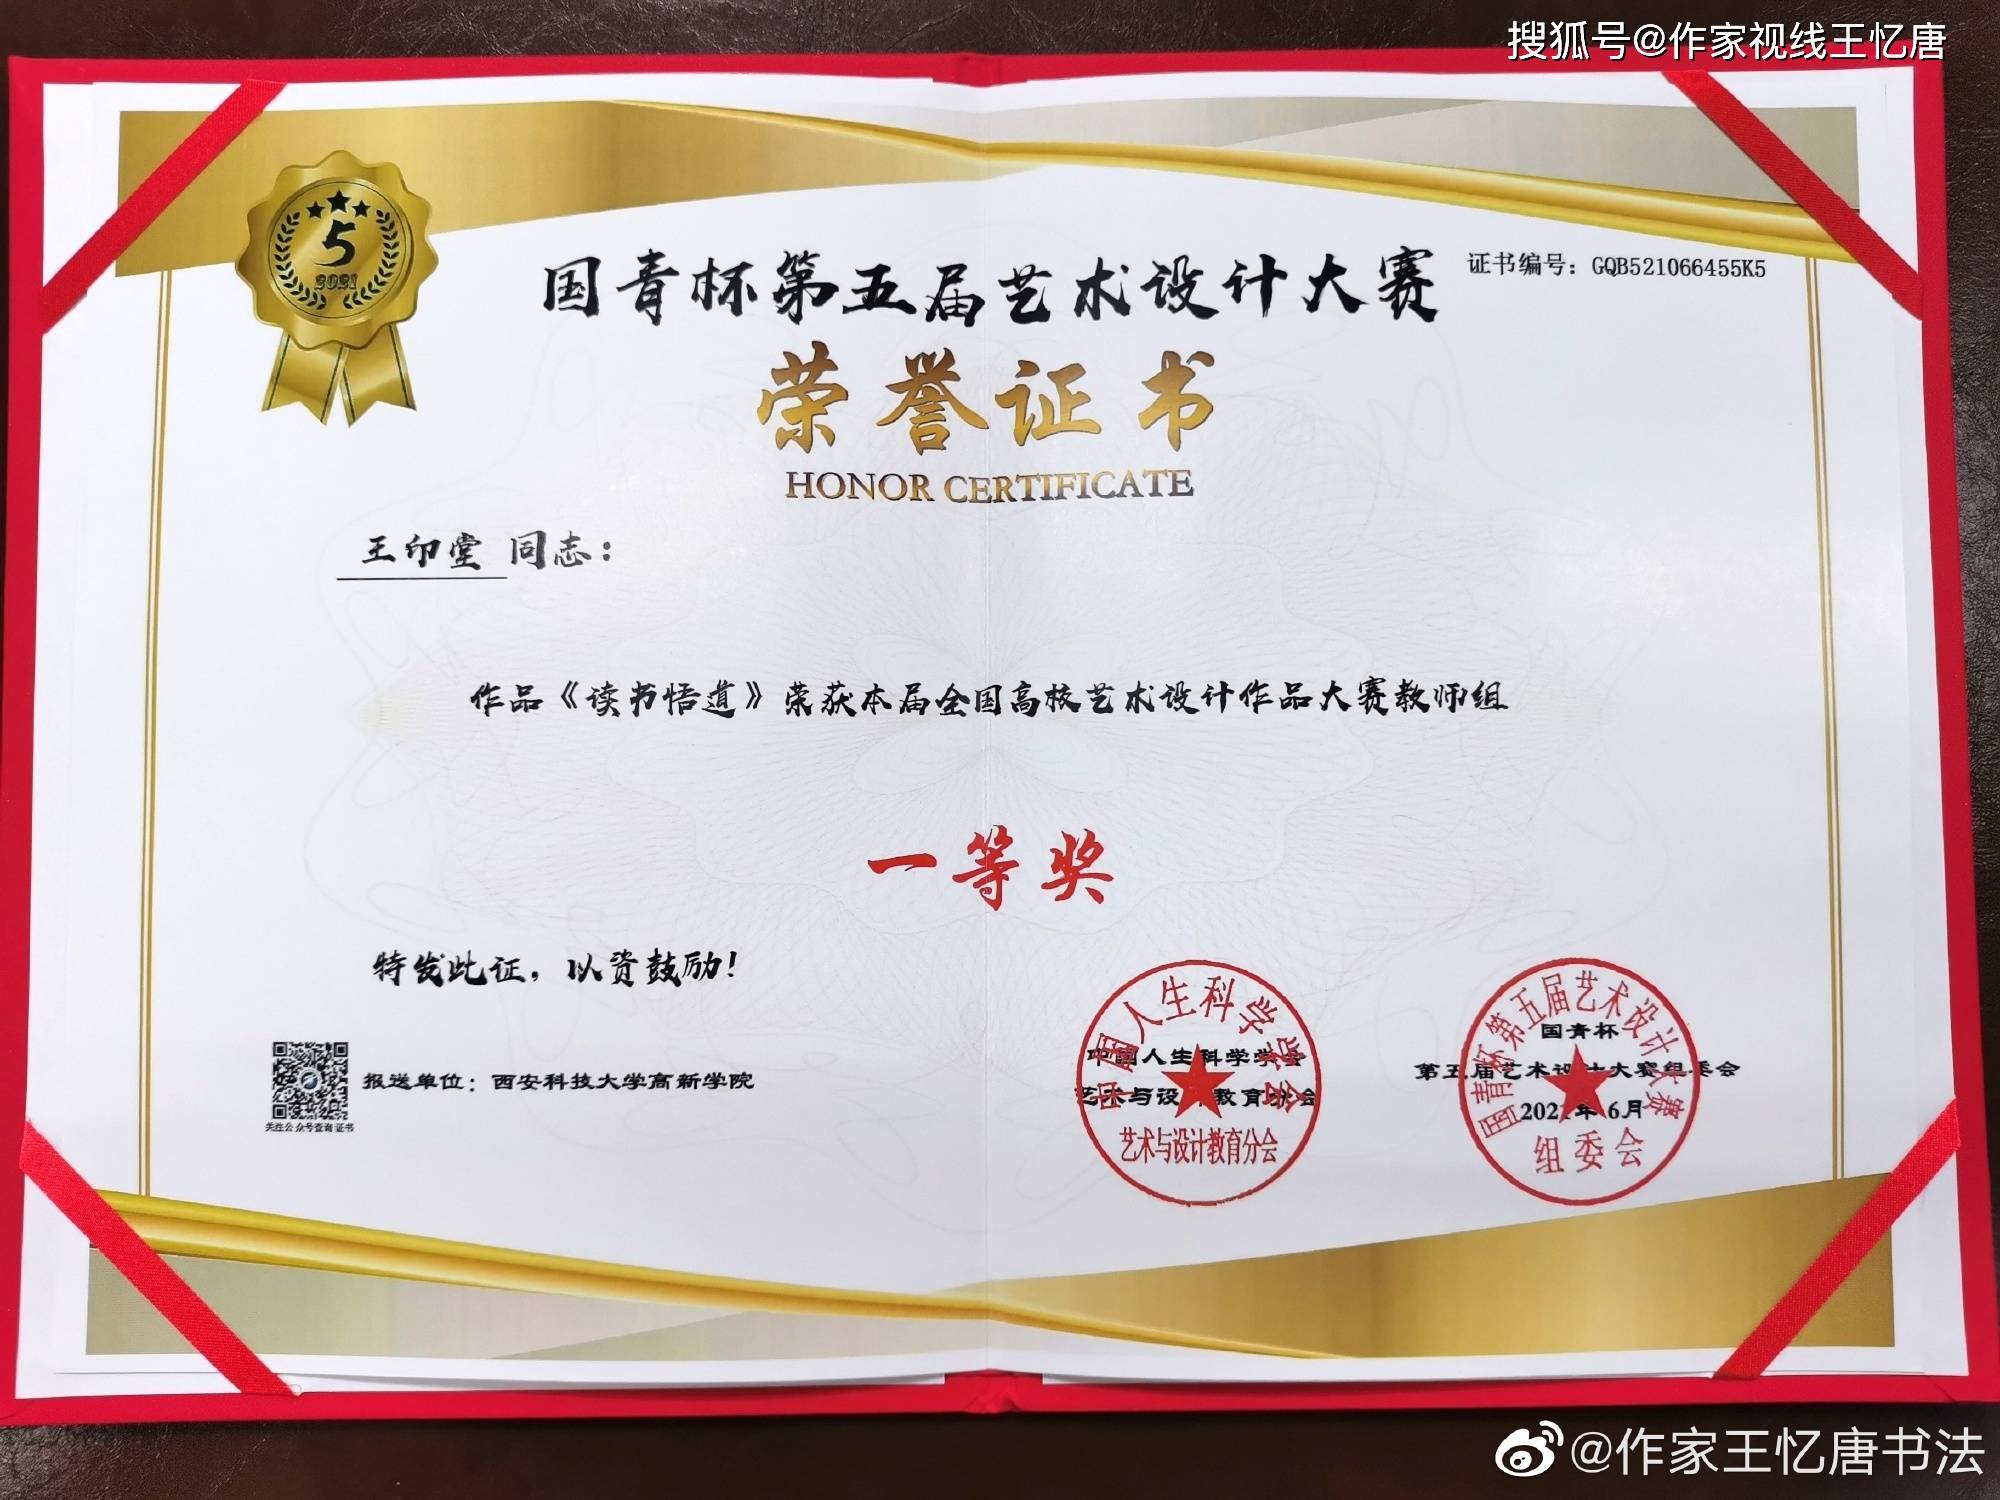 高新学院王印堂(王忆唐)老师获"国青杯"高校艺术设计大赛两个一等奖